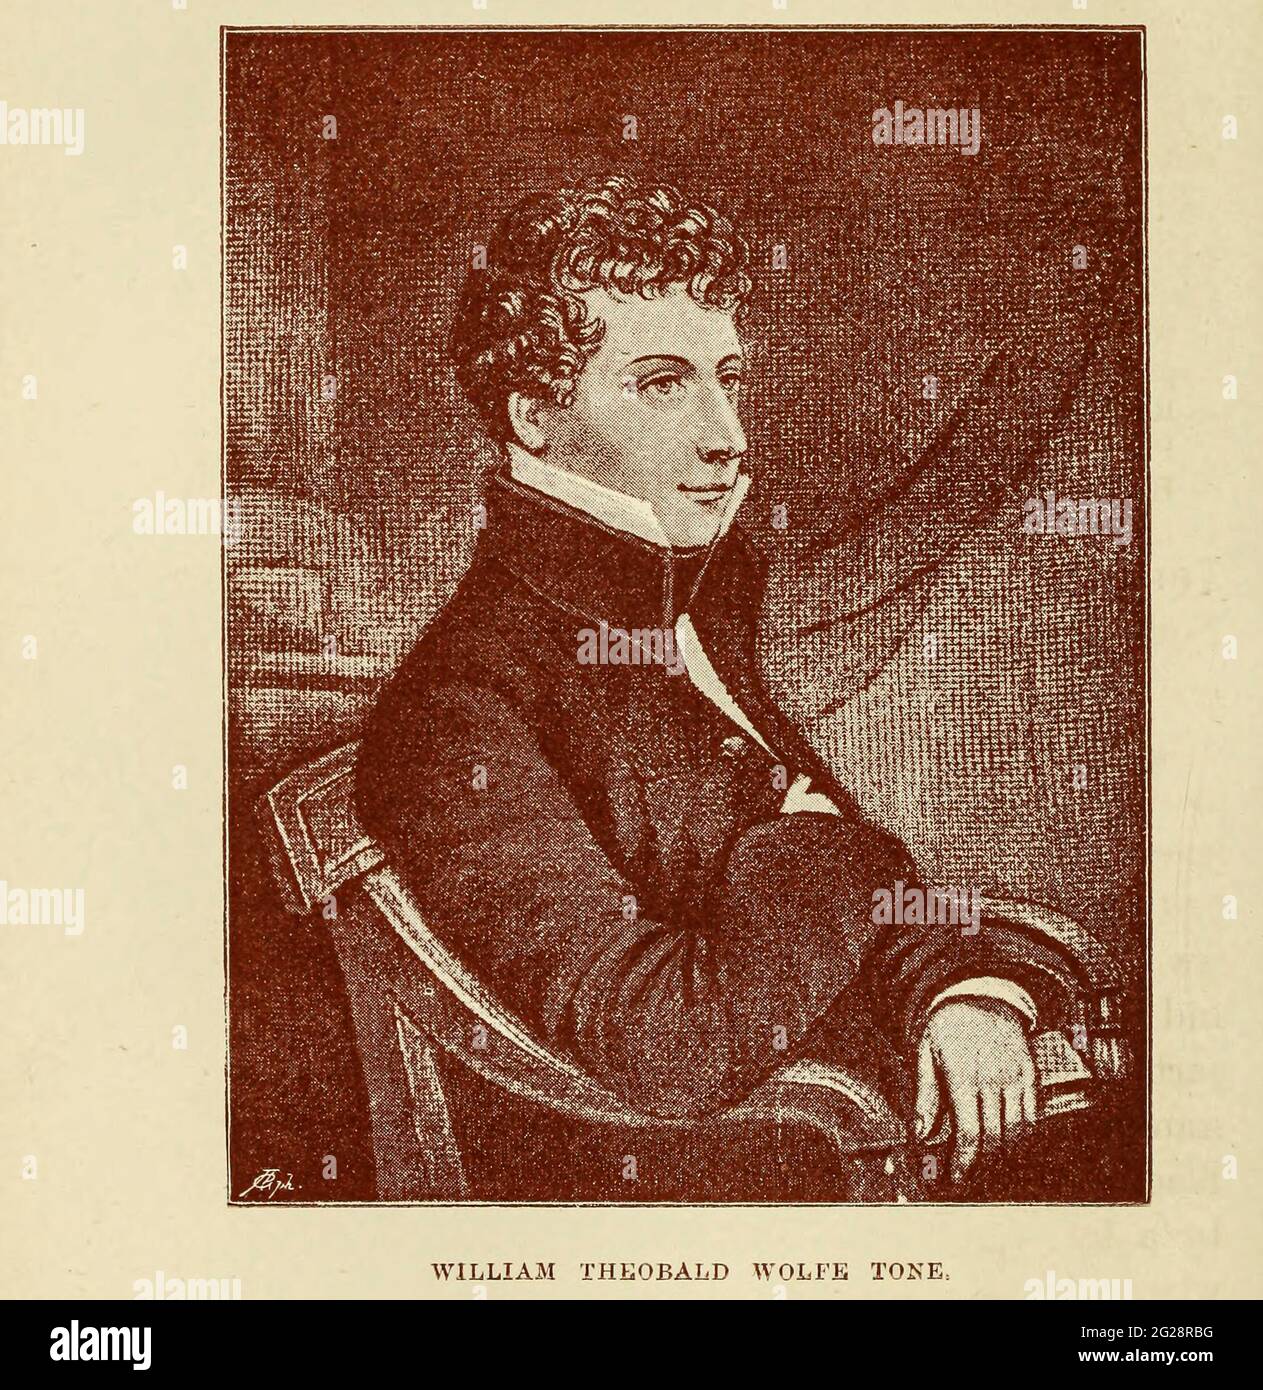 William Theobald Wolfe Tone, connu à titre posthume sous le nom de Wolfe Tone (20 juin 1763 – 19 novembre 1798), était une figure révolutionnaire irlandaise de premier plan et l'un des membres fondateurs des Irlandais Unis, une société républicaine qui s'est révoltée contre la domination britannique en Irlande, Où il était un chef entrant dans la rébellion irlandaise de 1798. Il a été capturé à Lough Swilly, près de Buncrana, comté de Donegal, le 3 novembre 1798, et condamné à mort le 19 novembre par pendaison. Il est mort sept jours plus tard dans des circonstances peu claires. Il a depuis été théorisé et accepté par la plupart des érudits irlandais qu'il a commis suicid Banque D'Images